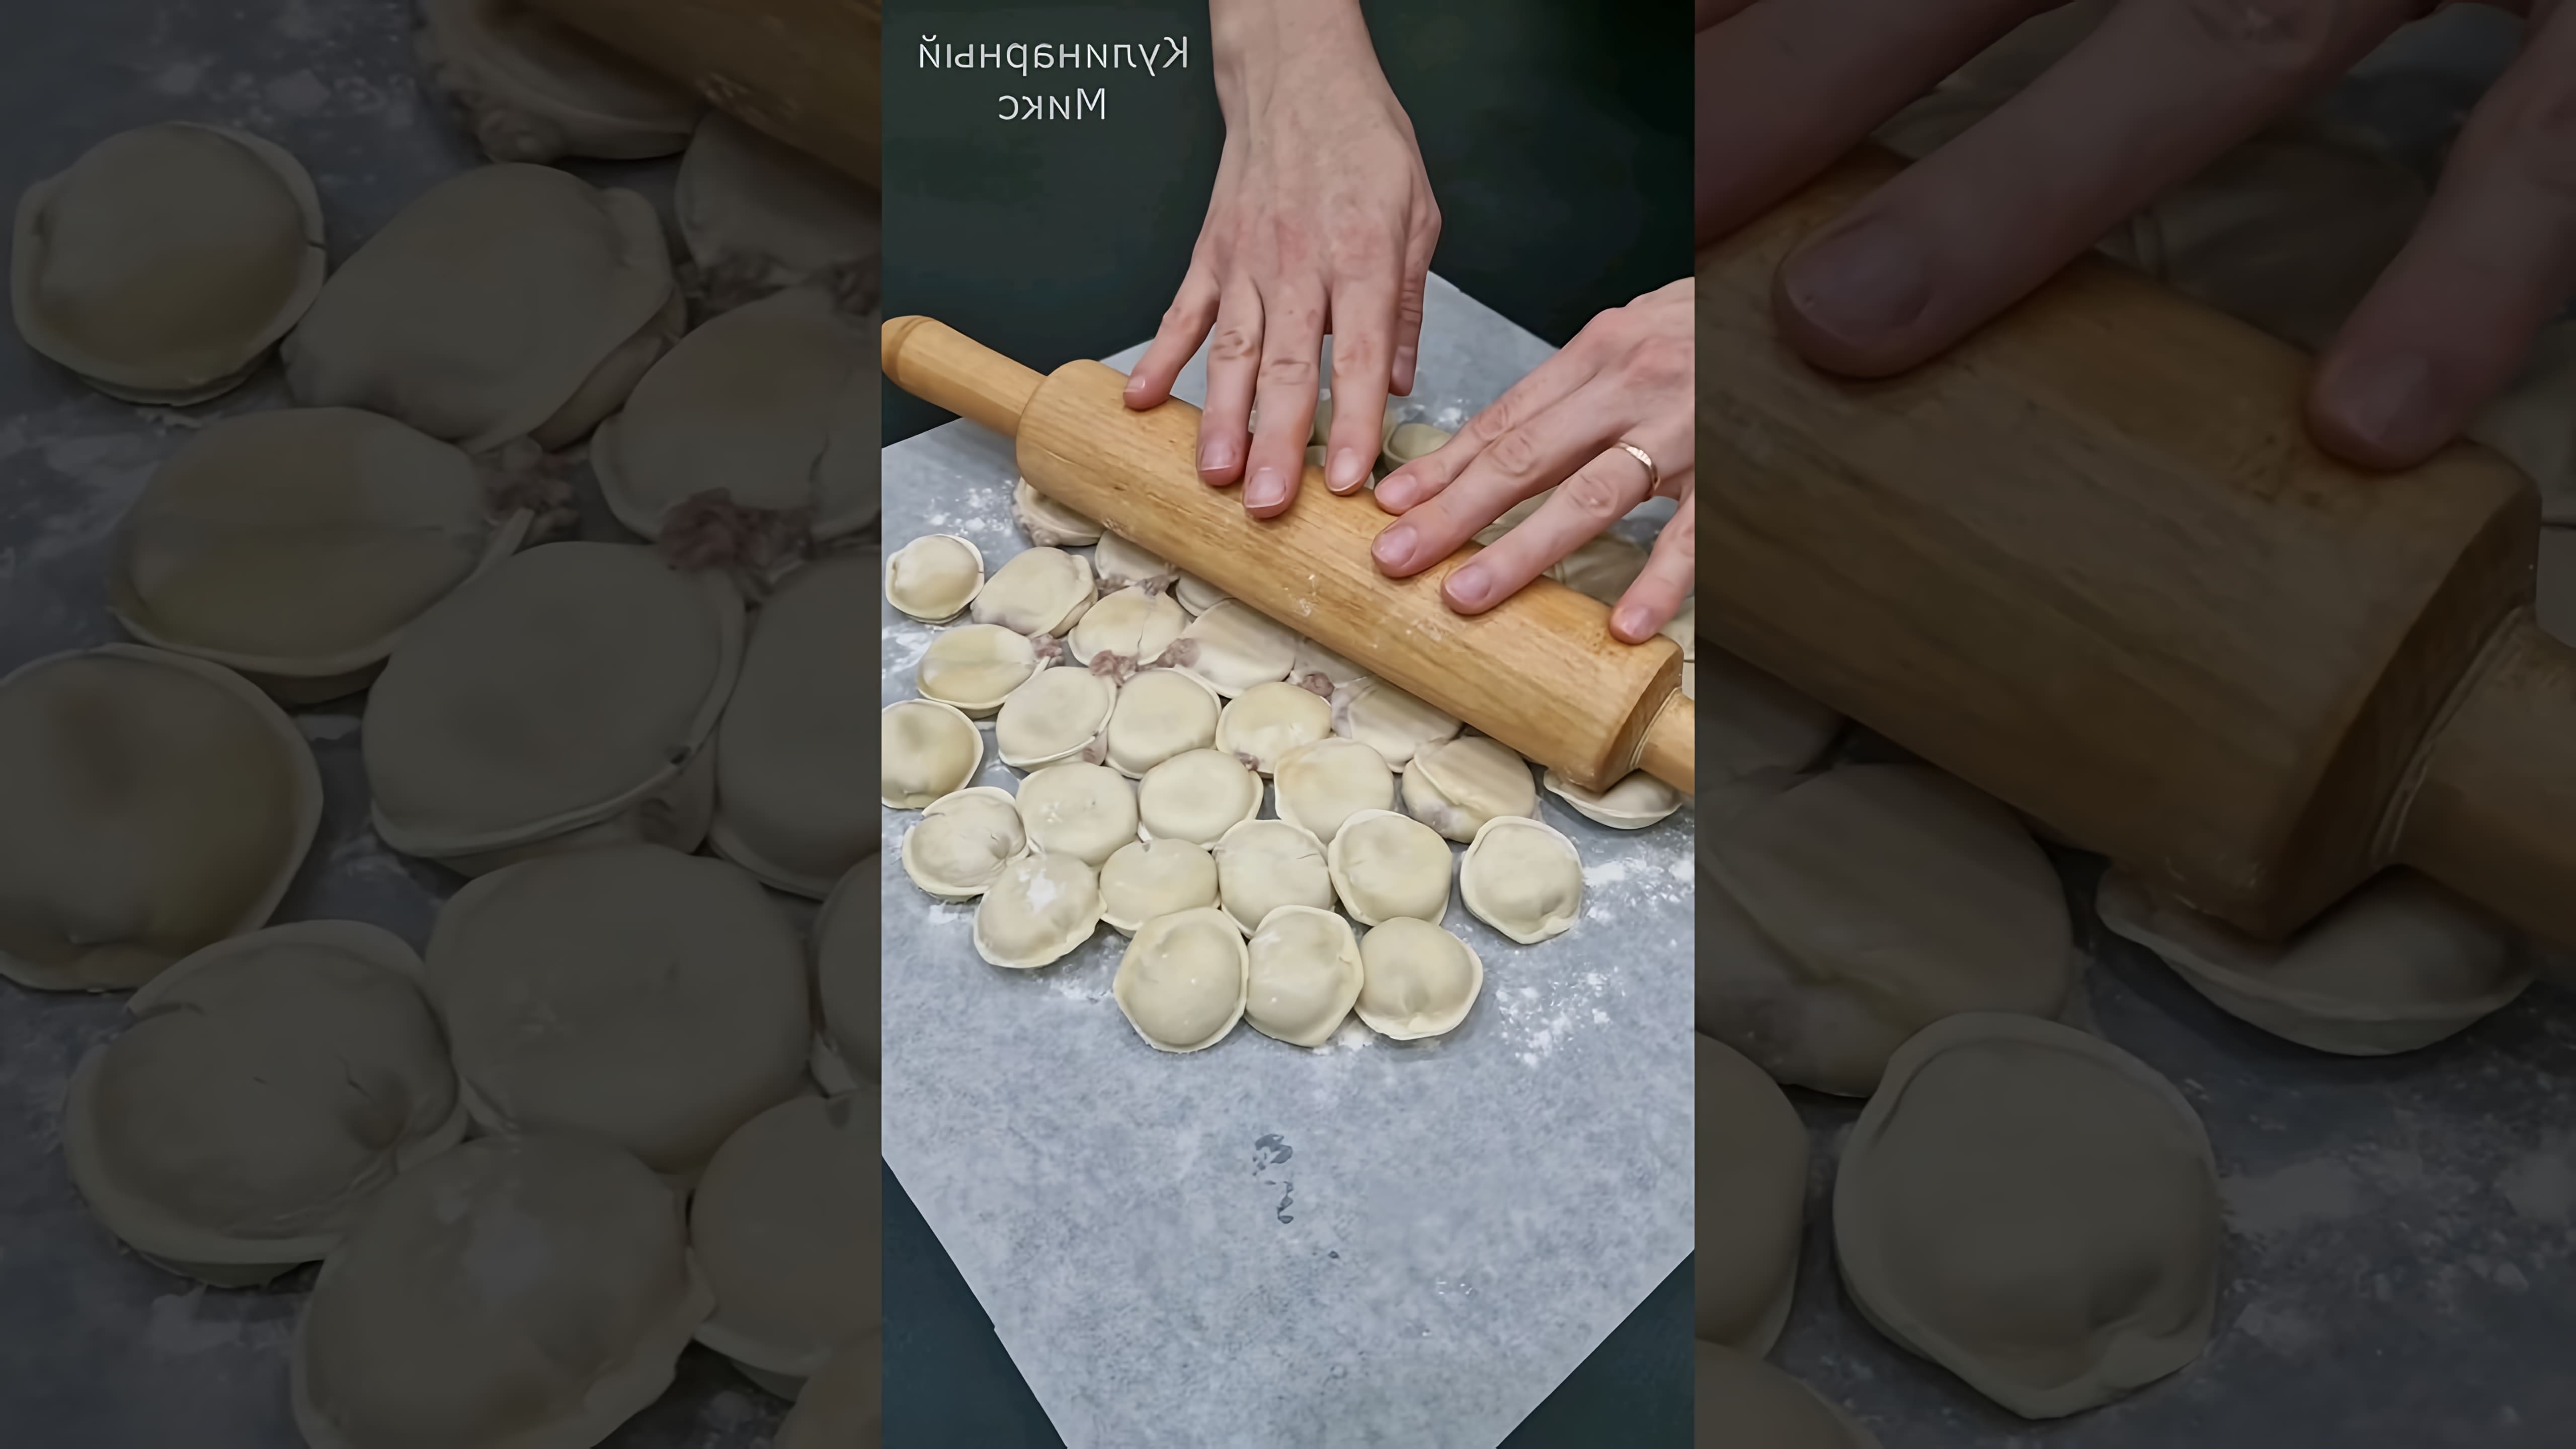 В этом видео демонстрируется процесс приготовления необычного блюда из готовых пельменей